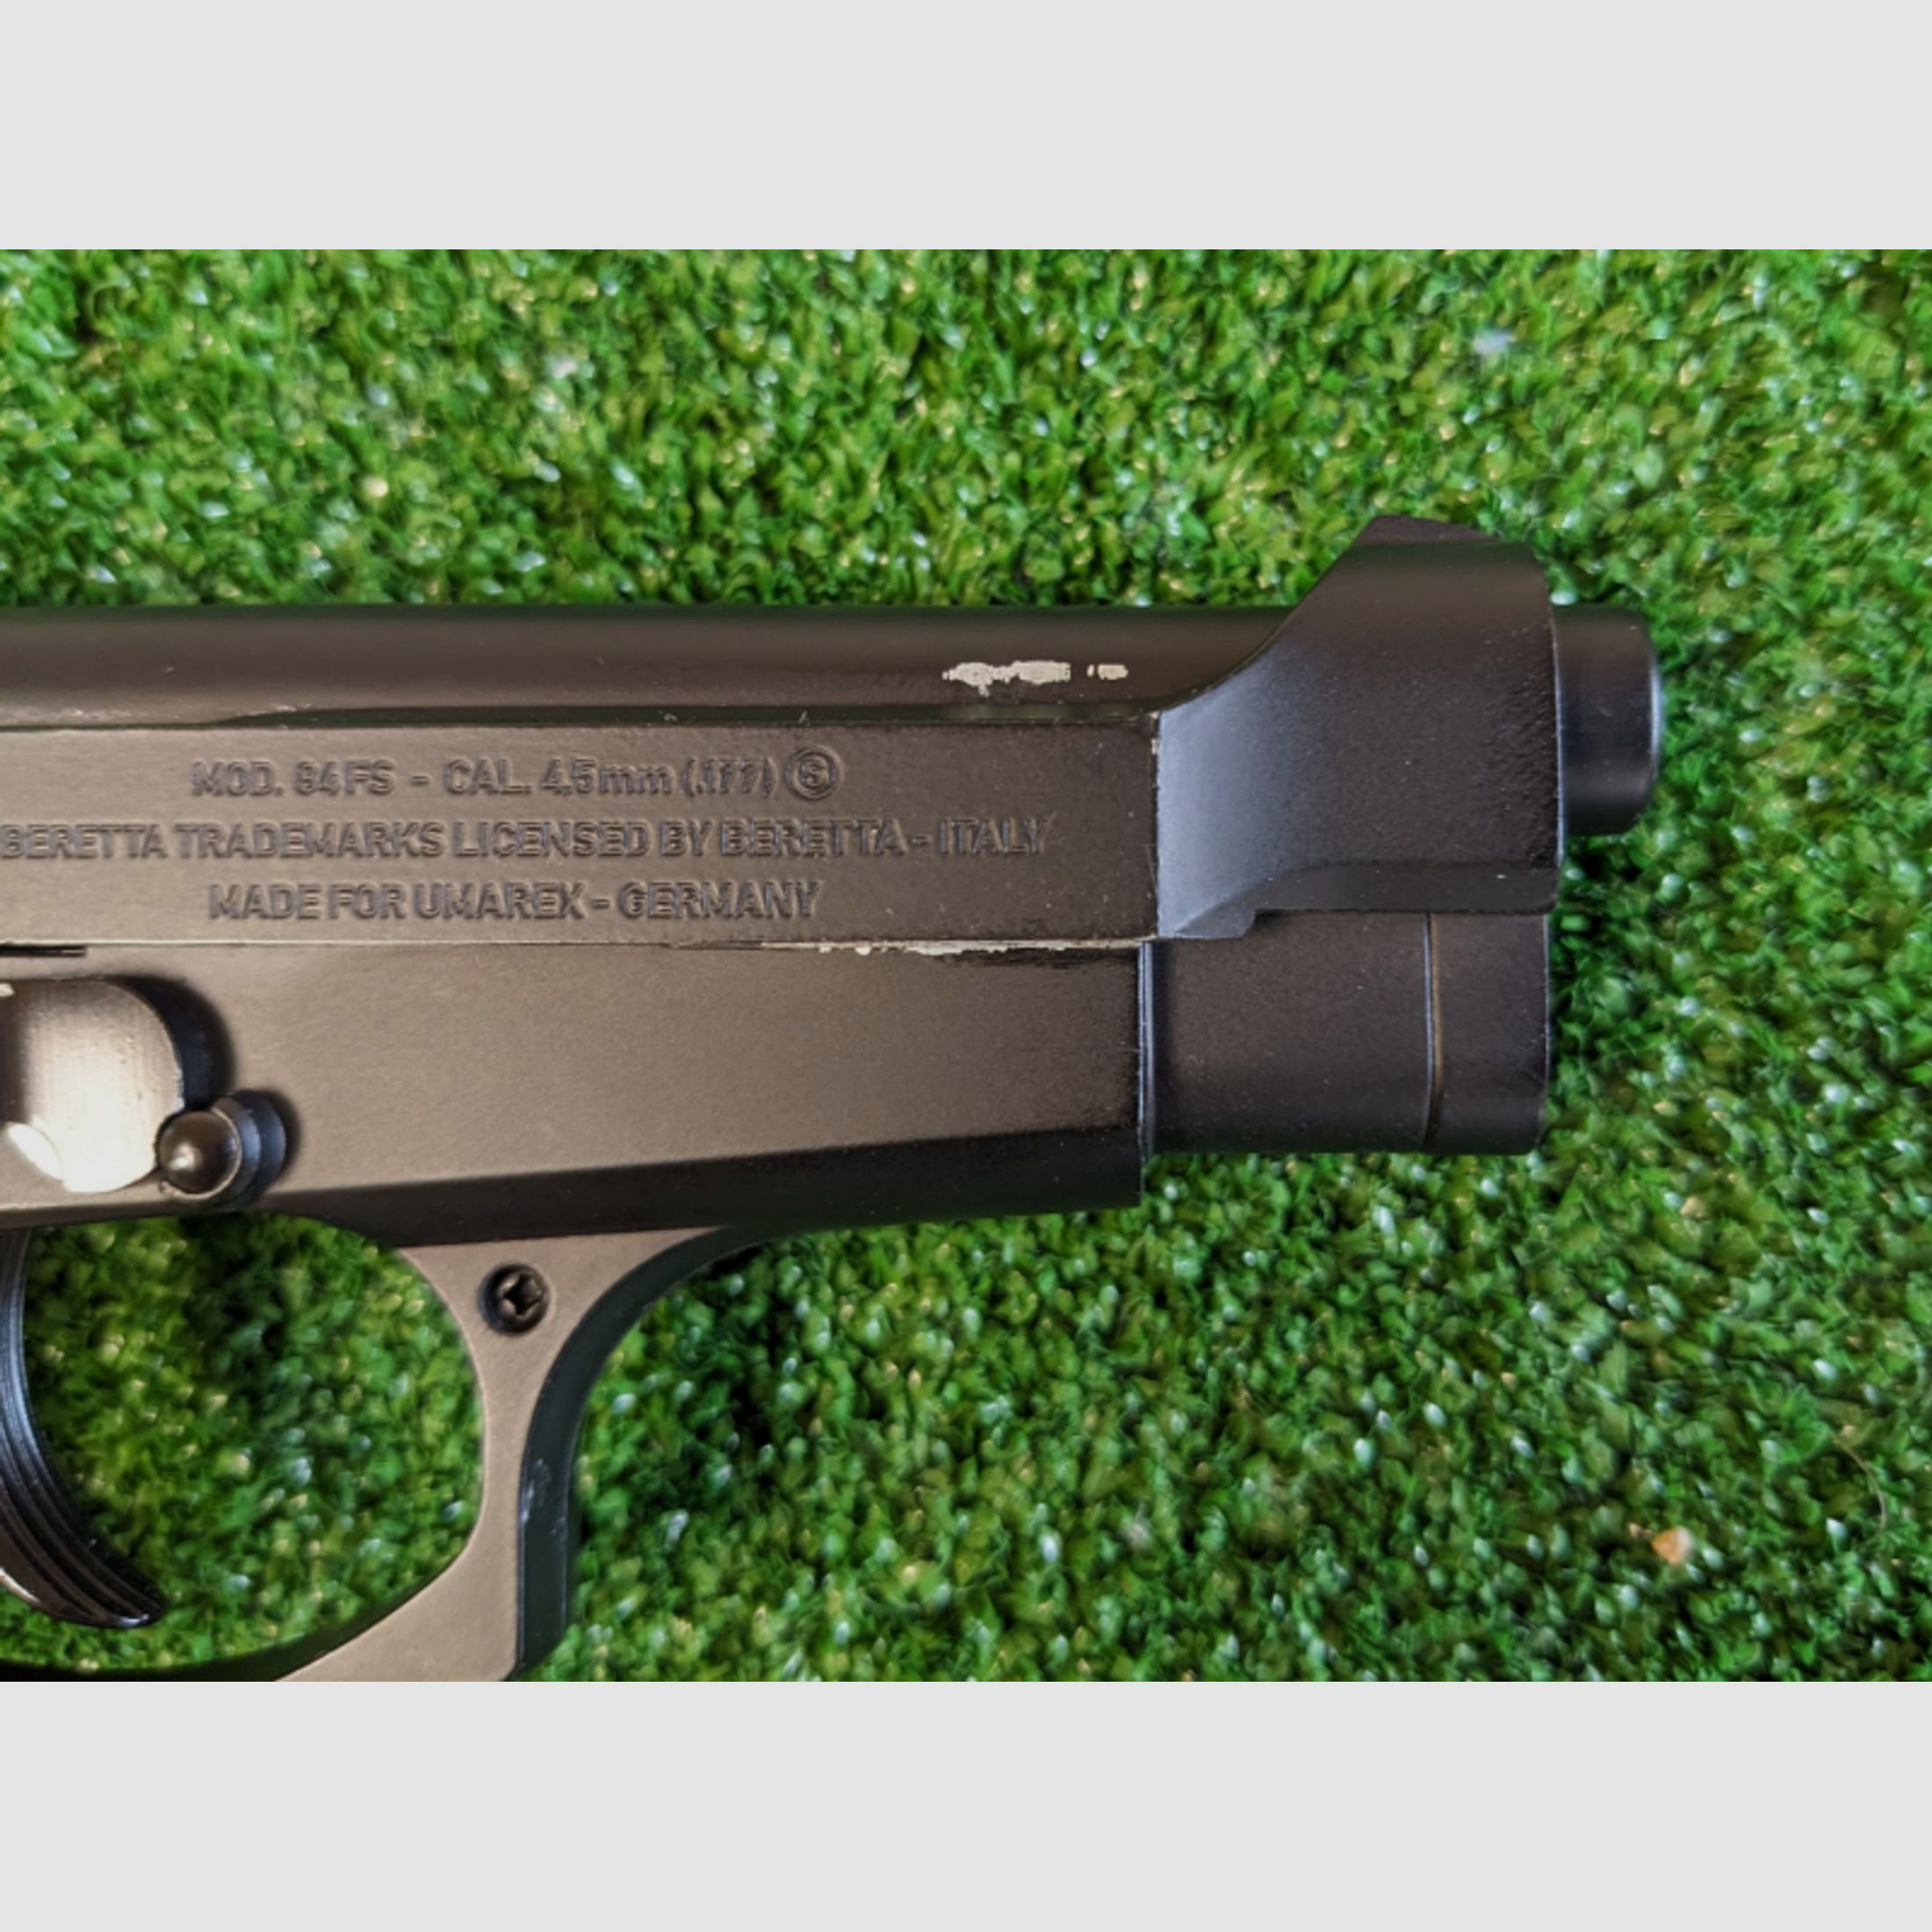 Beretta M84 FS CO2 Pistole